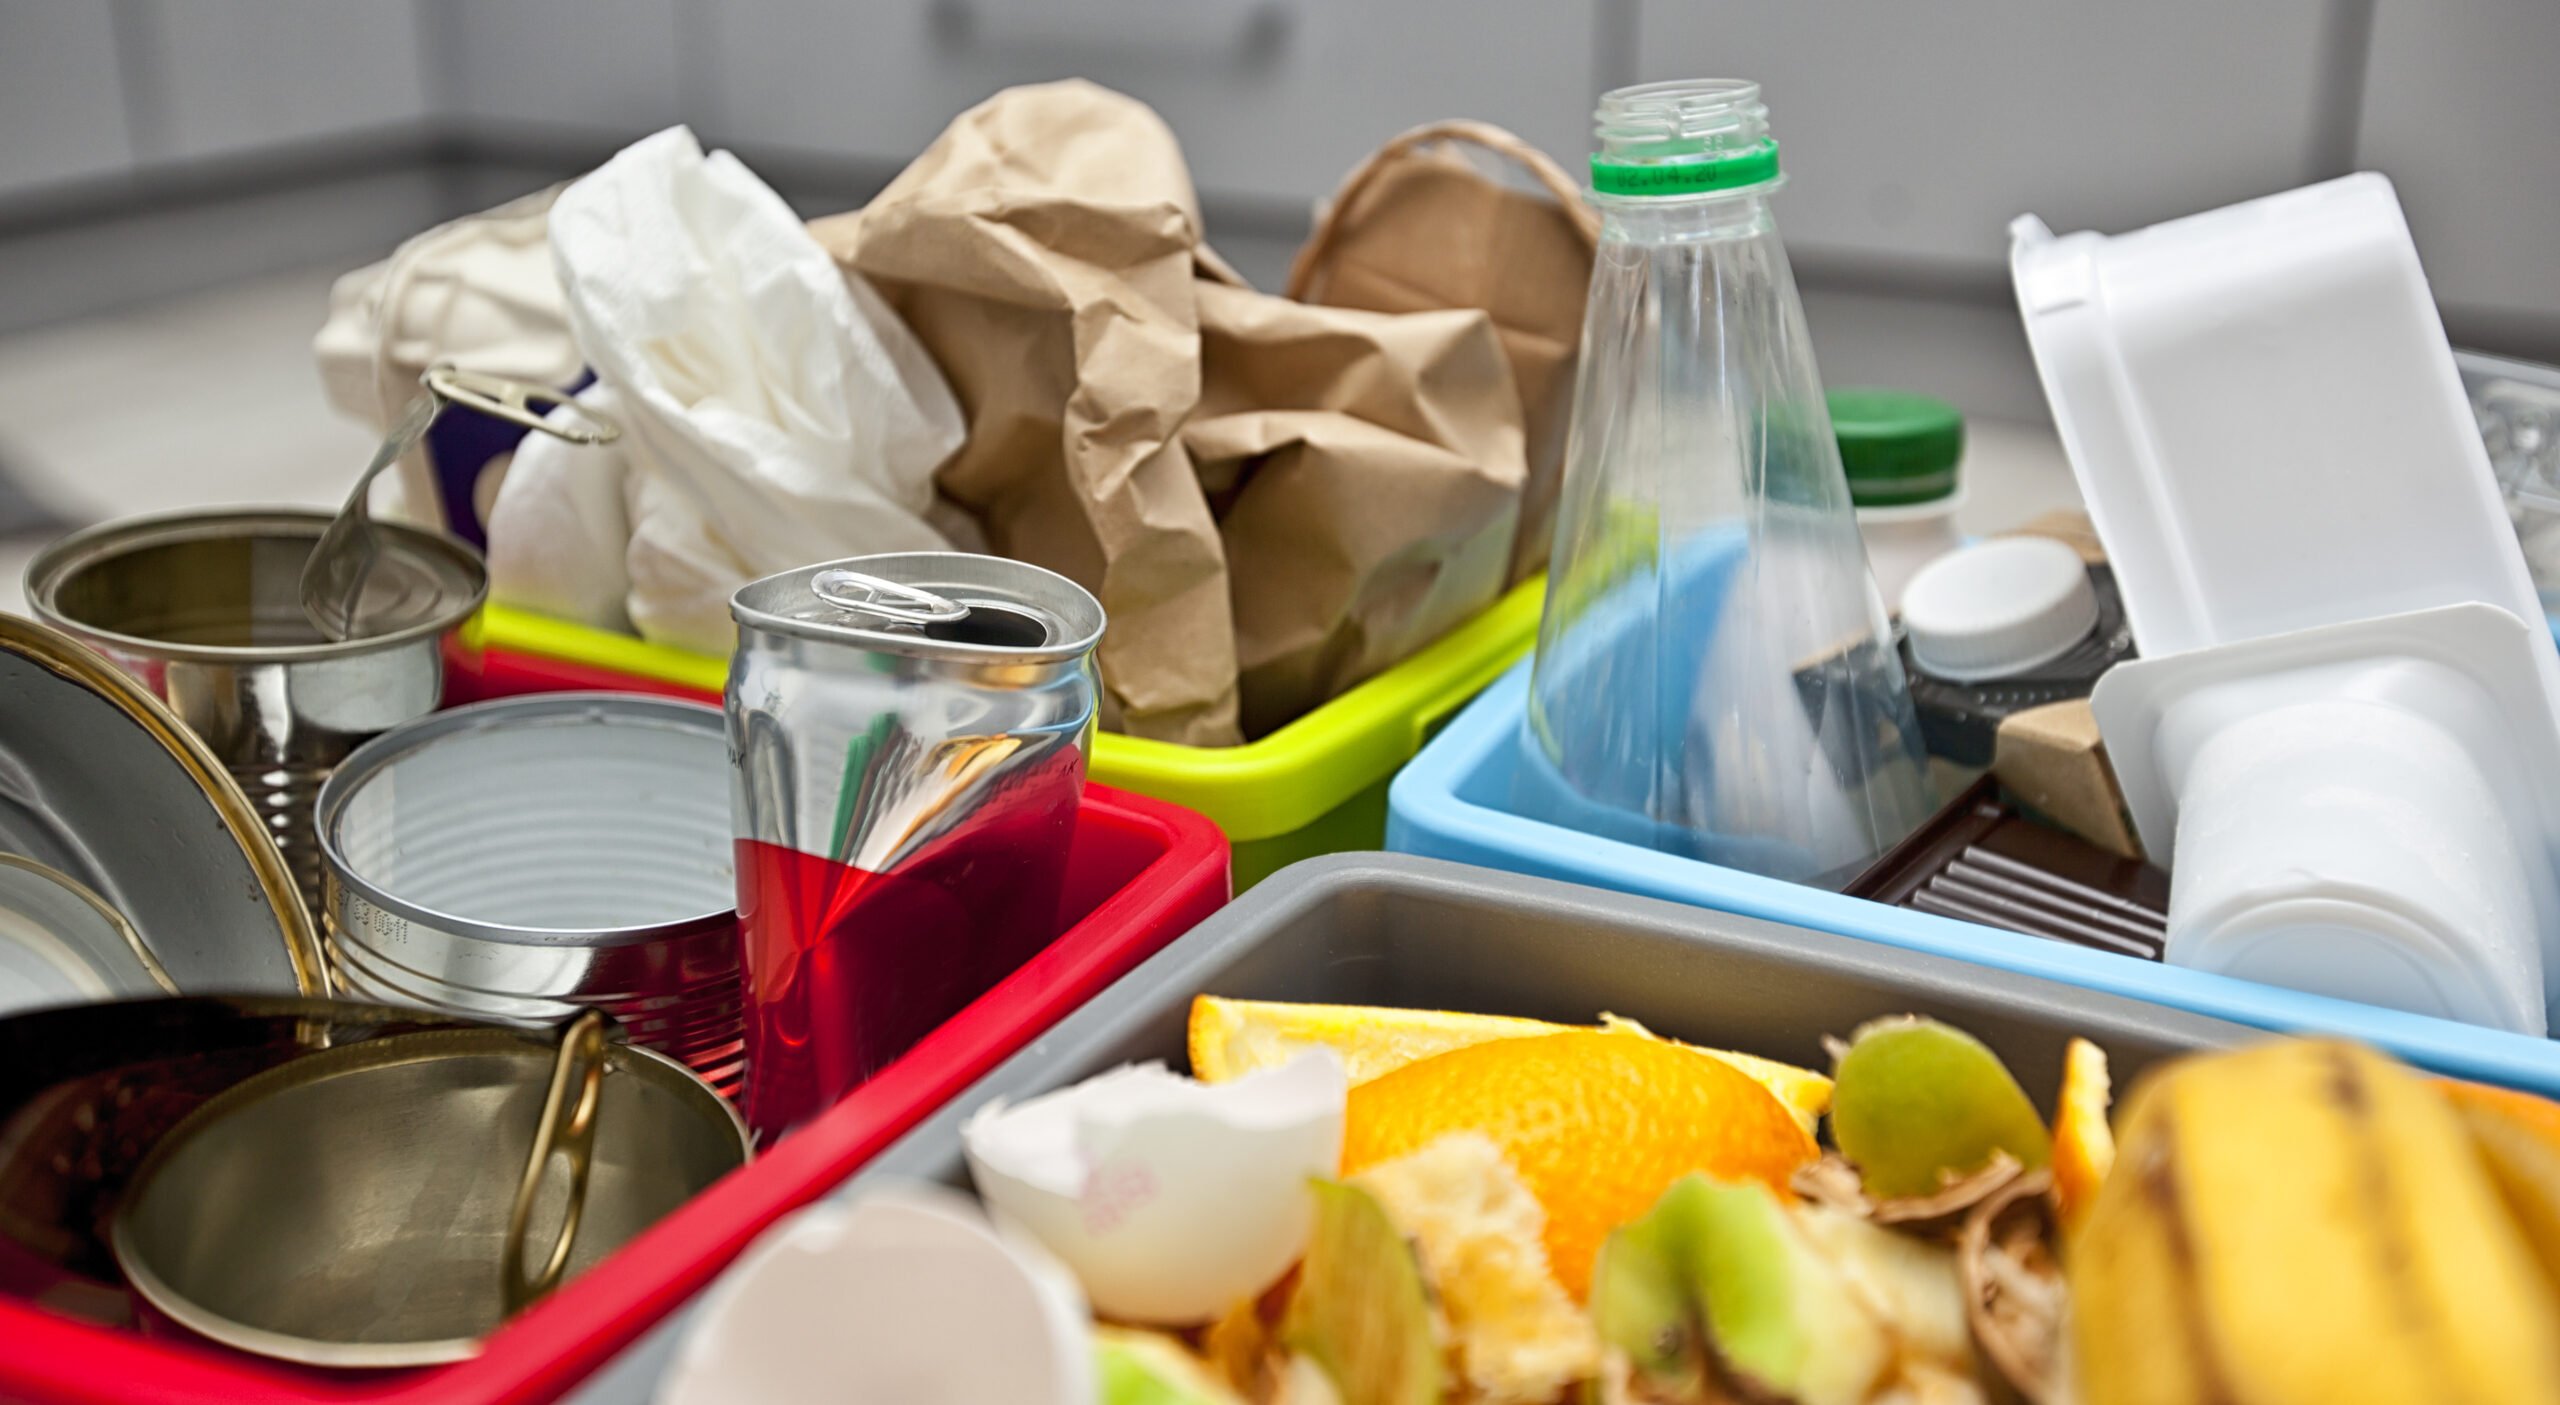 Por qué no debes reutilizar los botes de plástico para guardar comida? Aquí  algunas razones